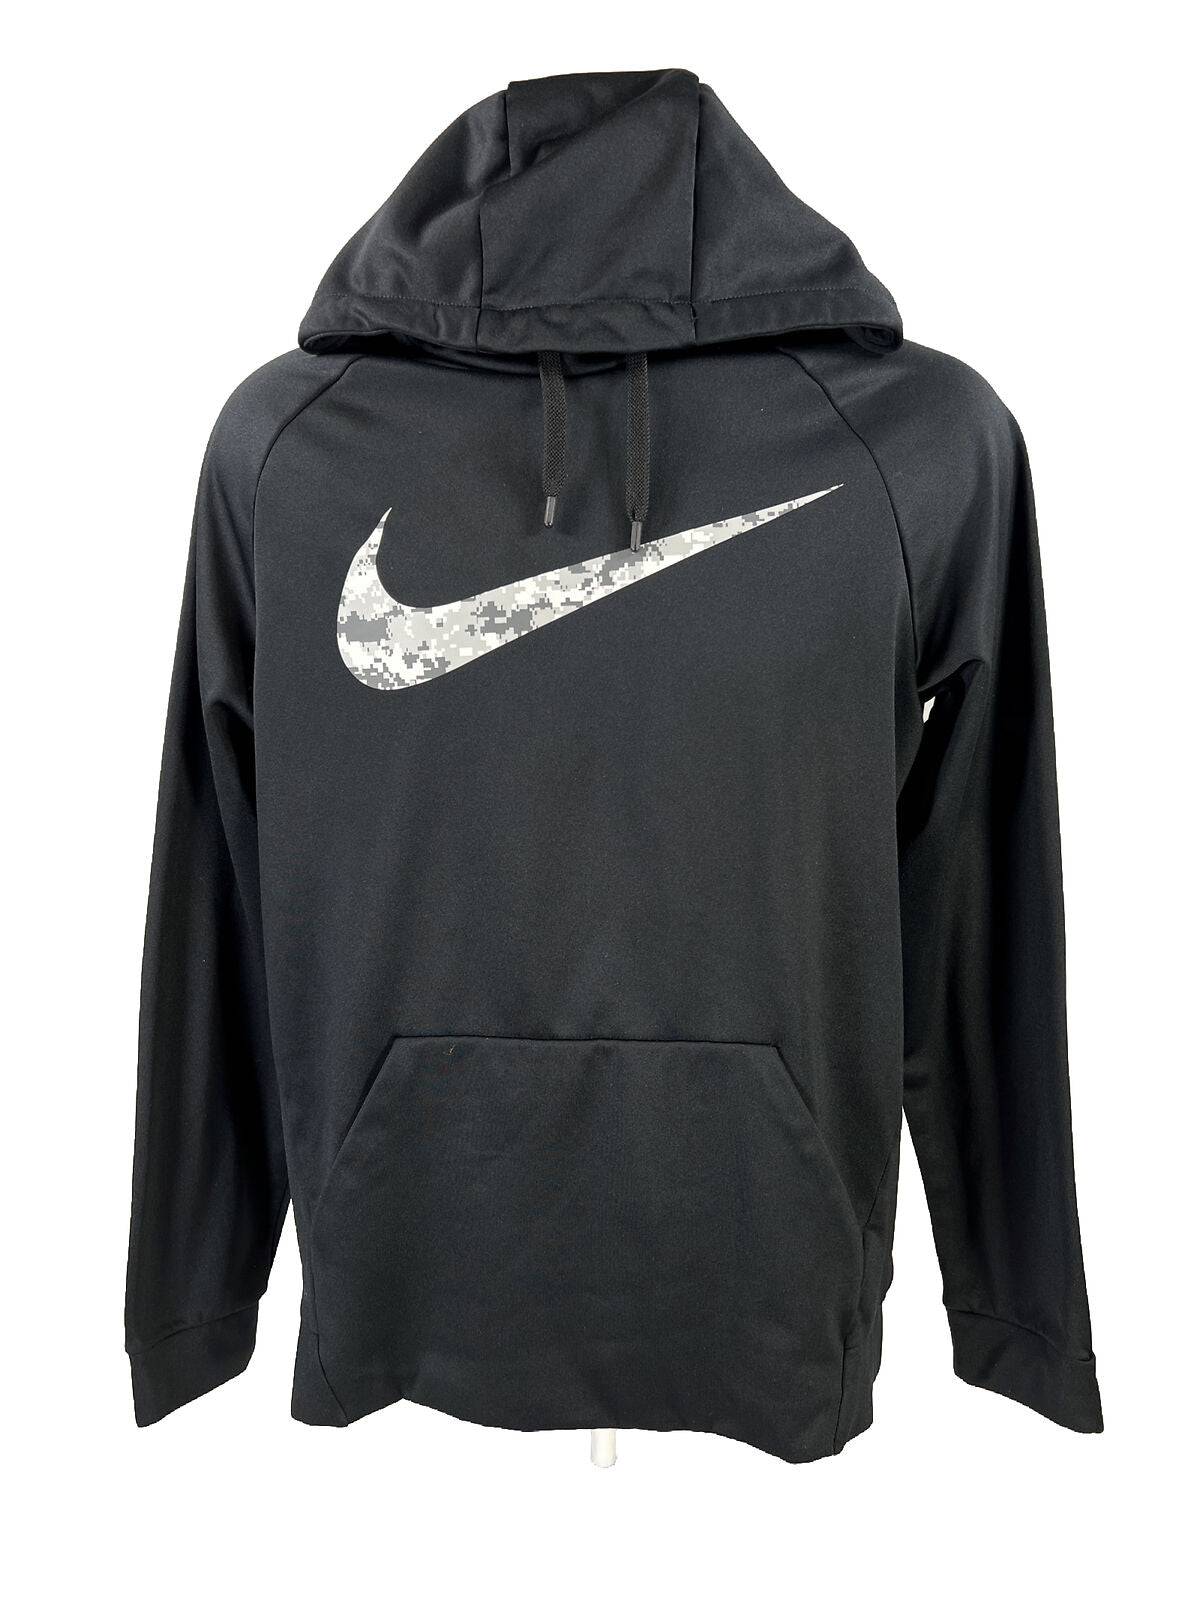 Nike Men's Black Fleece Lined Long Sleeve Pullover Sweatshirt - M